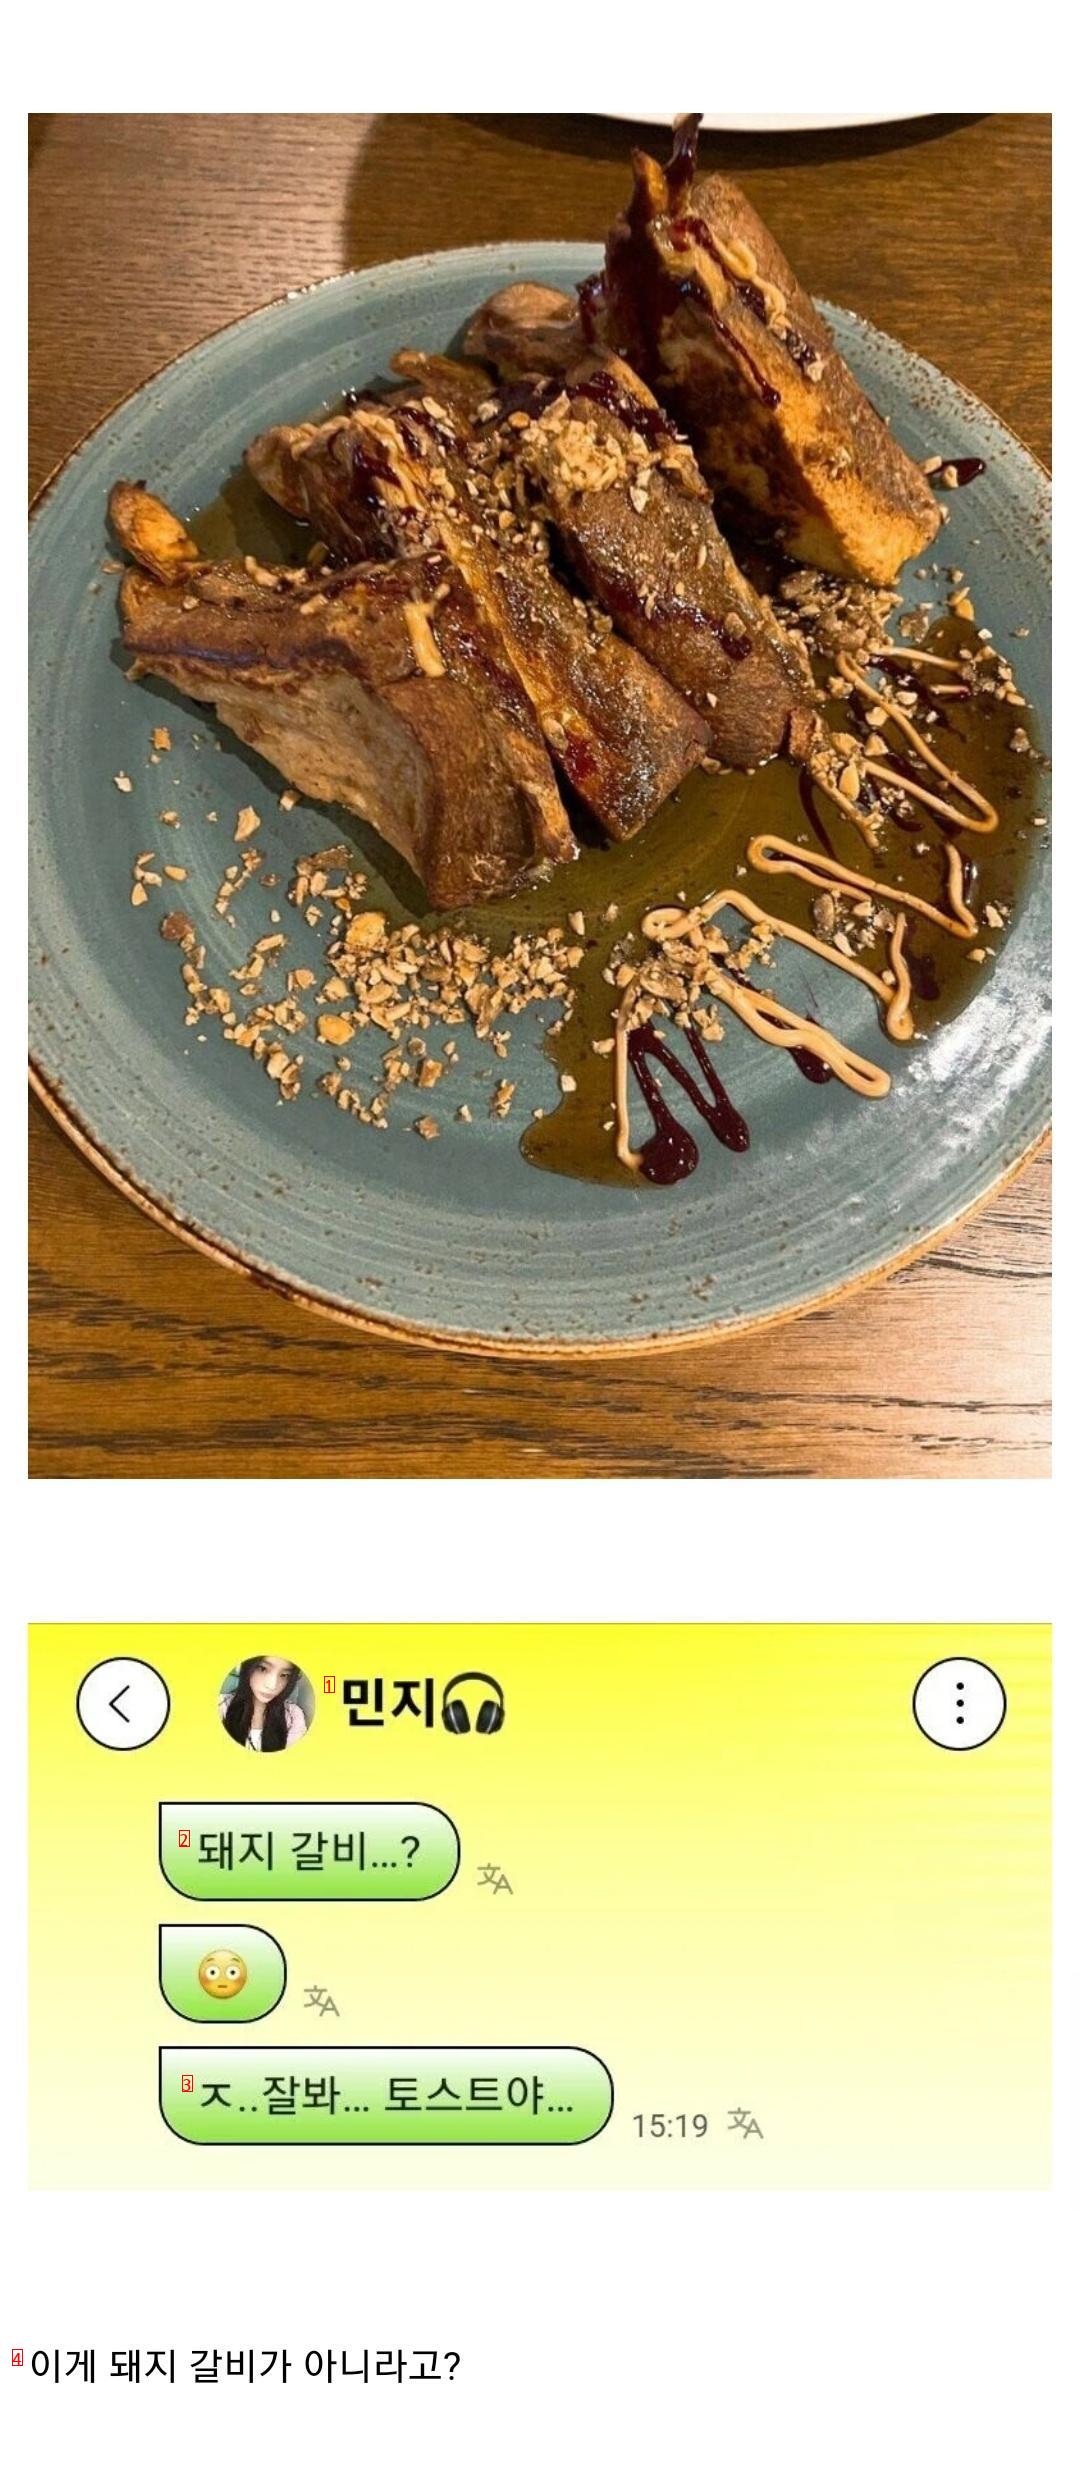 New Jin's Pork Ribs Controversy